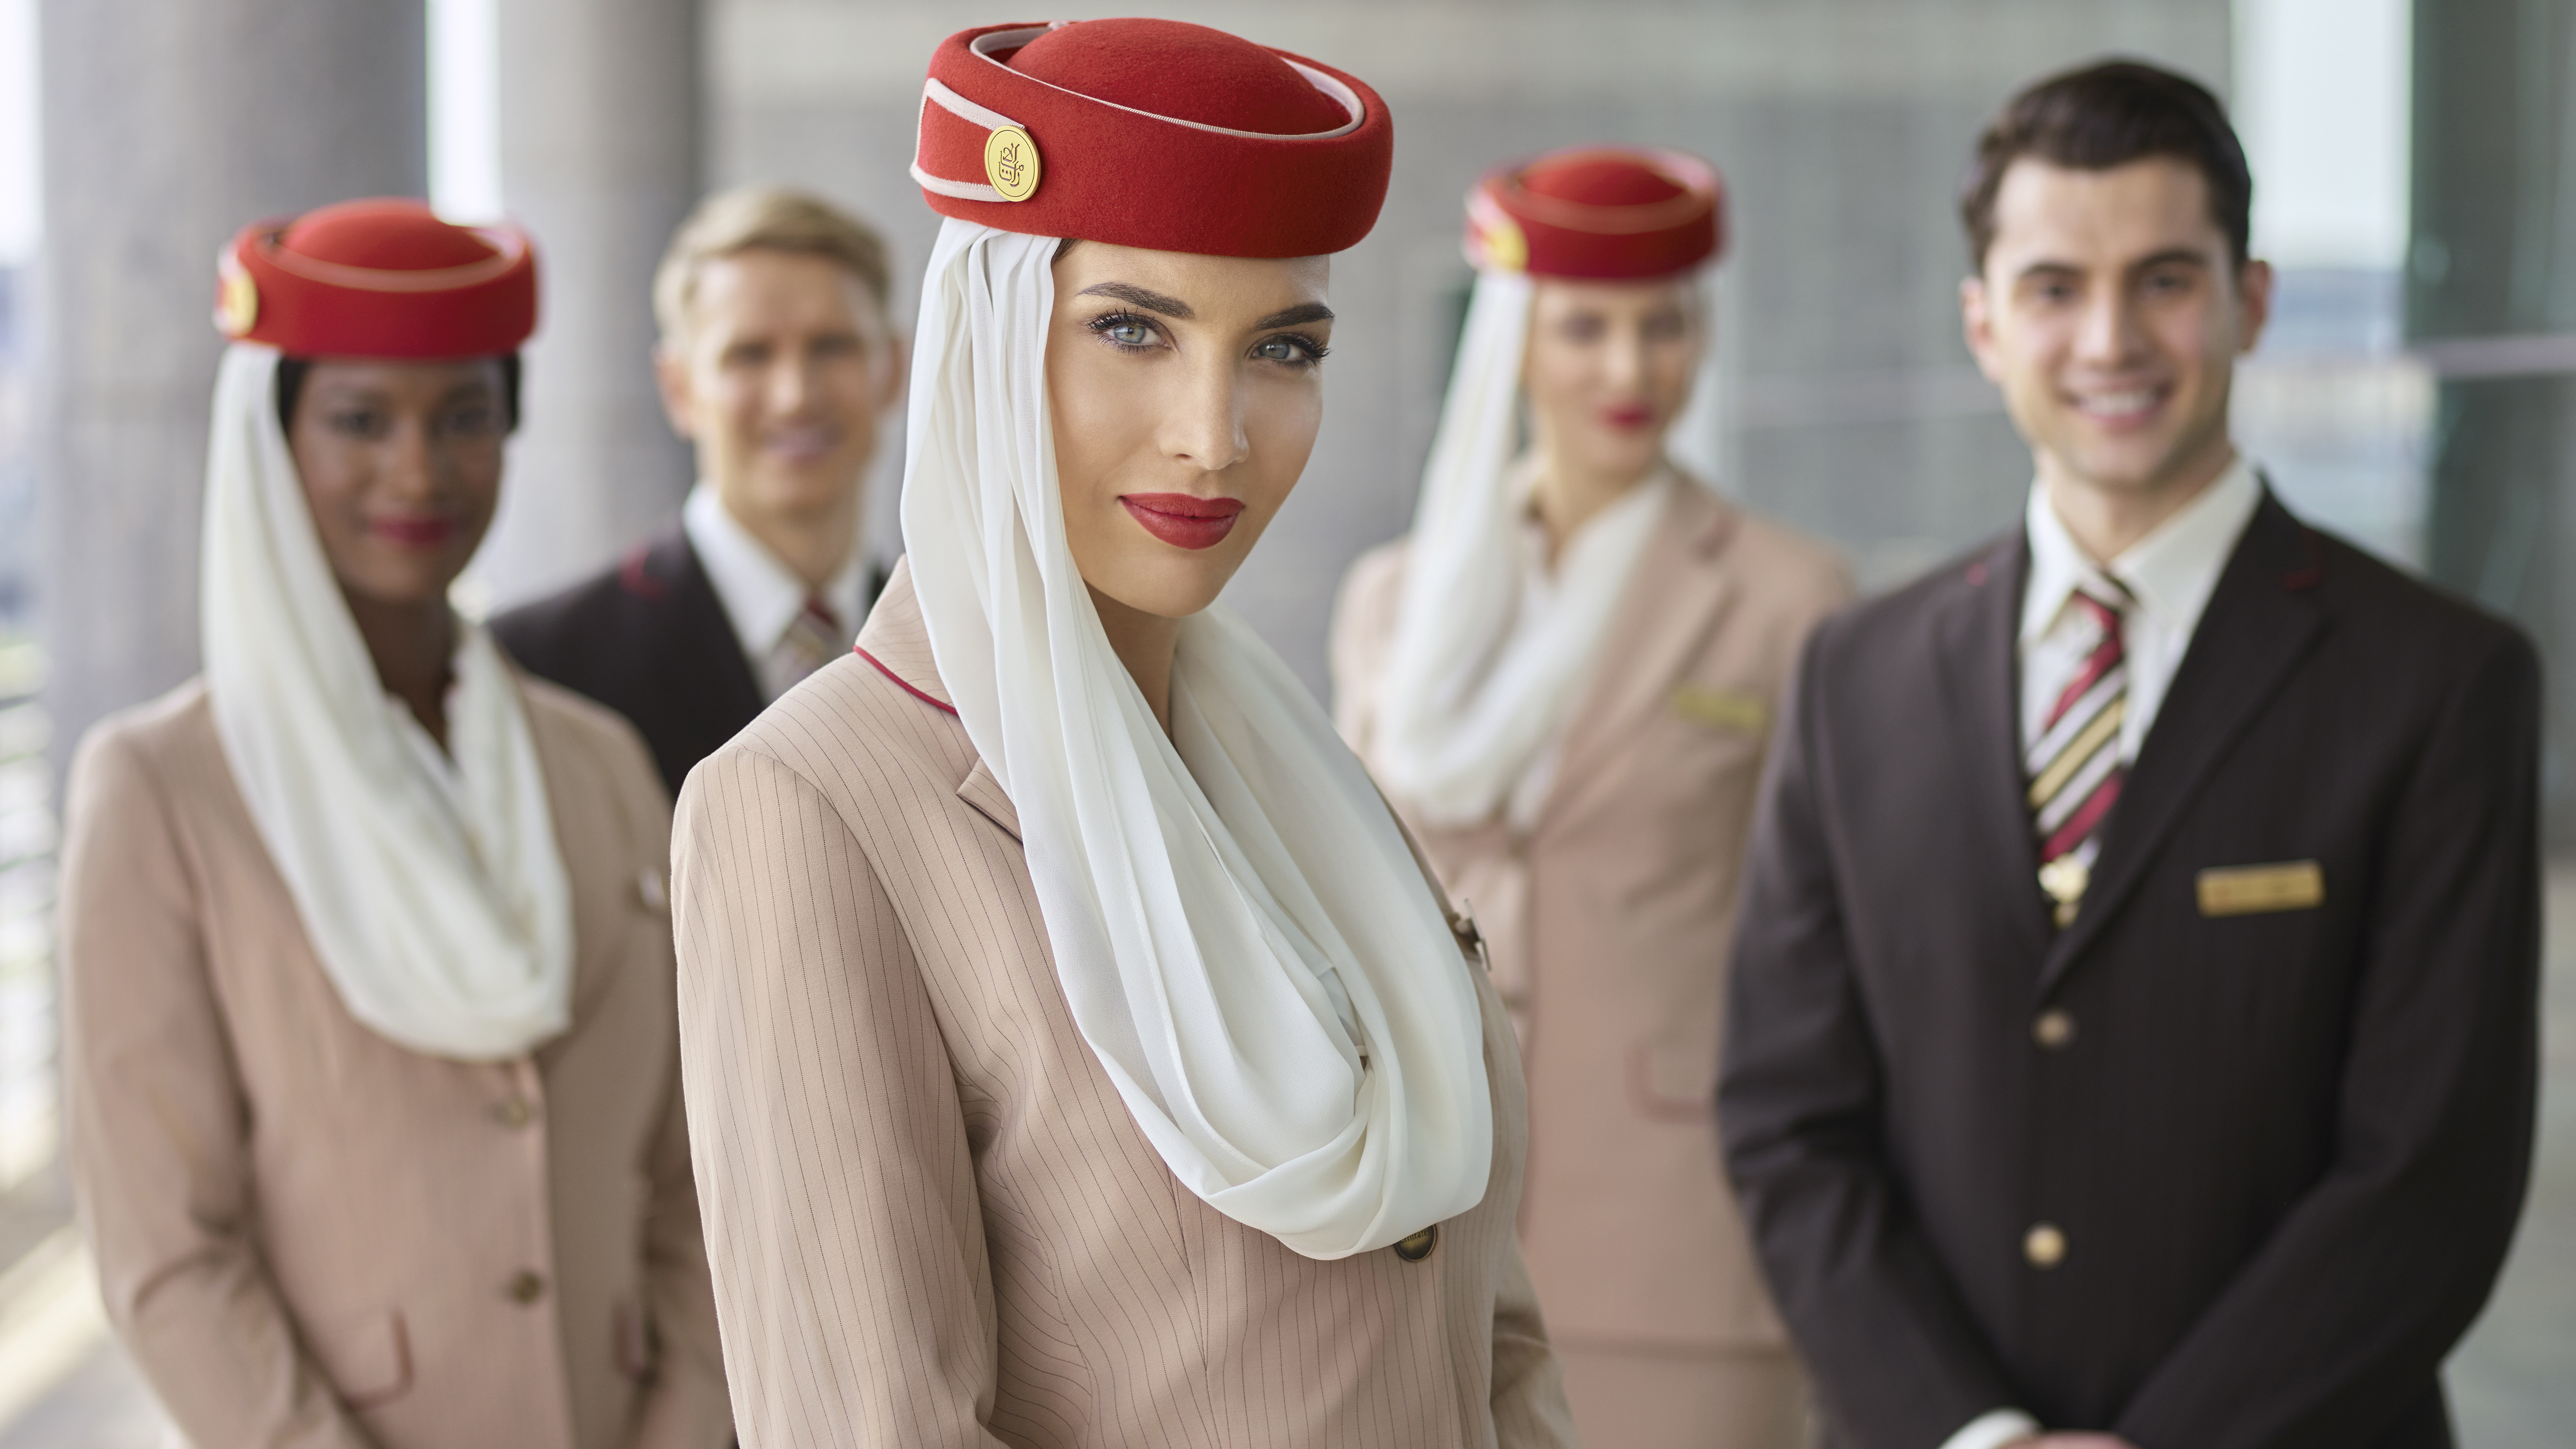 Uae service. Emirates Airlines Cabin Crew. Эмирейтс авиакомпания стюардессы. Эмиратские авиалинии стюардессы. Emirates Airlines Бортпроводник.